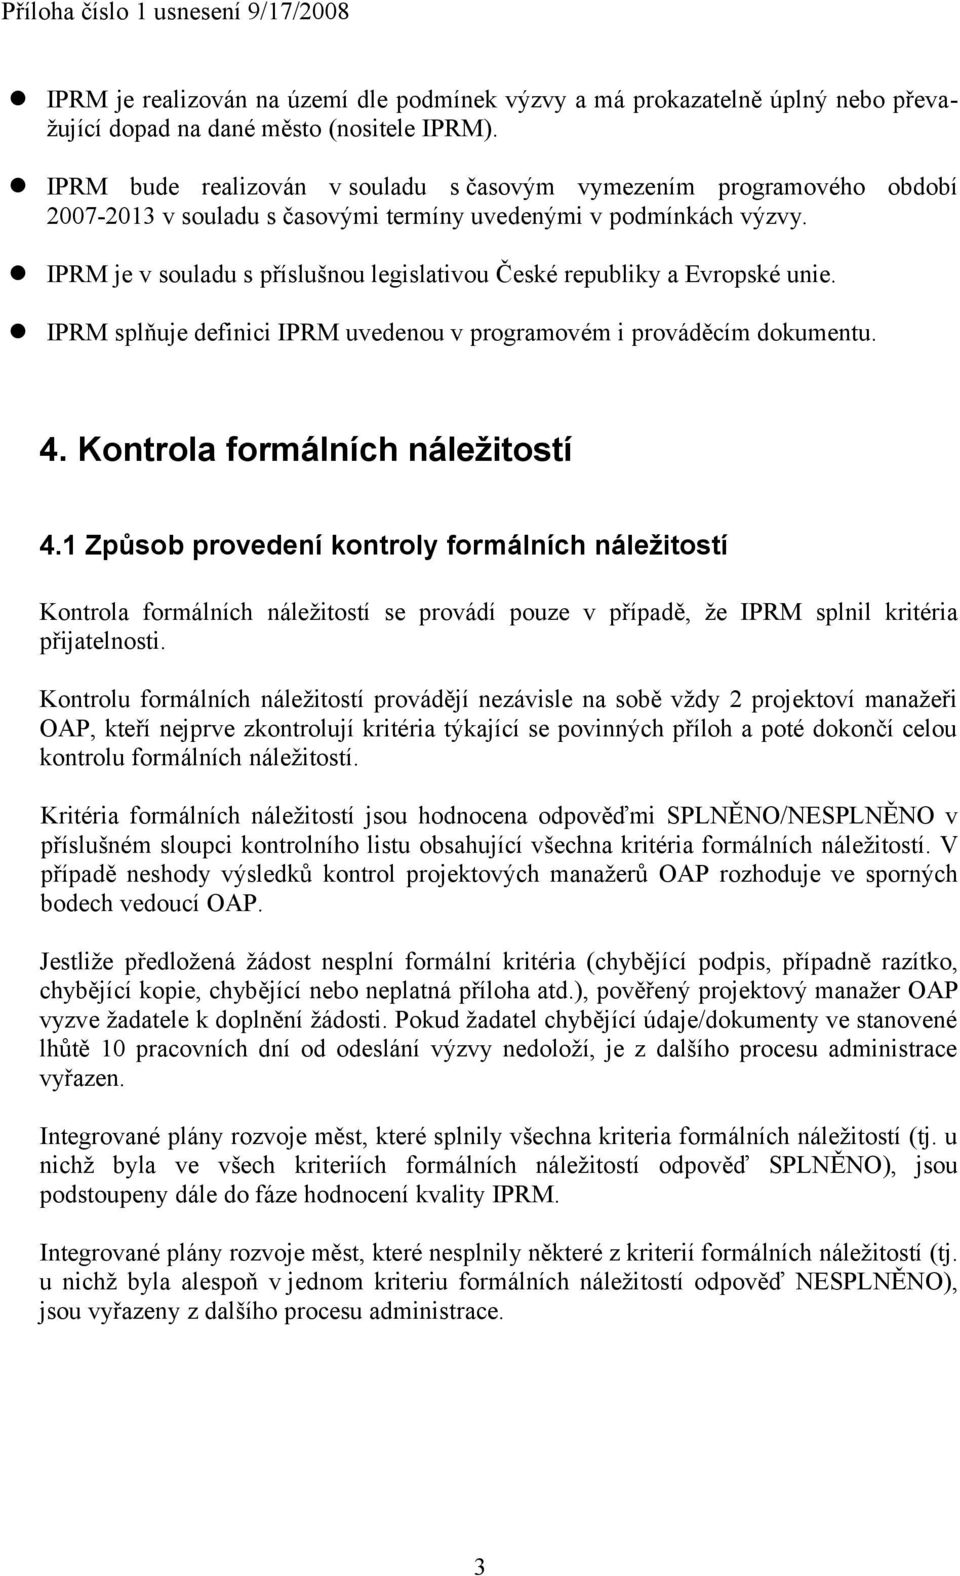 IPRM je v souladu s příslušnou legislativou České republiky a Evropské unie. IPRM splňuje definici IPRM uvedenou v programovém i prováděcím dokumentu. 4. Kontrola formálních náležitostí 4.